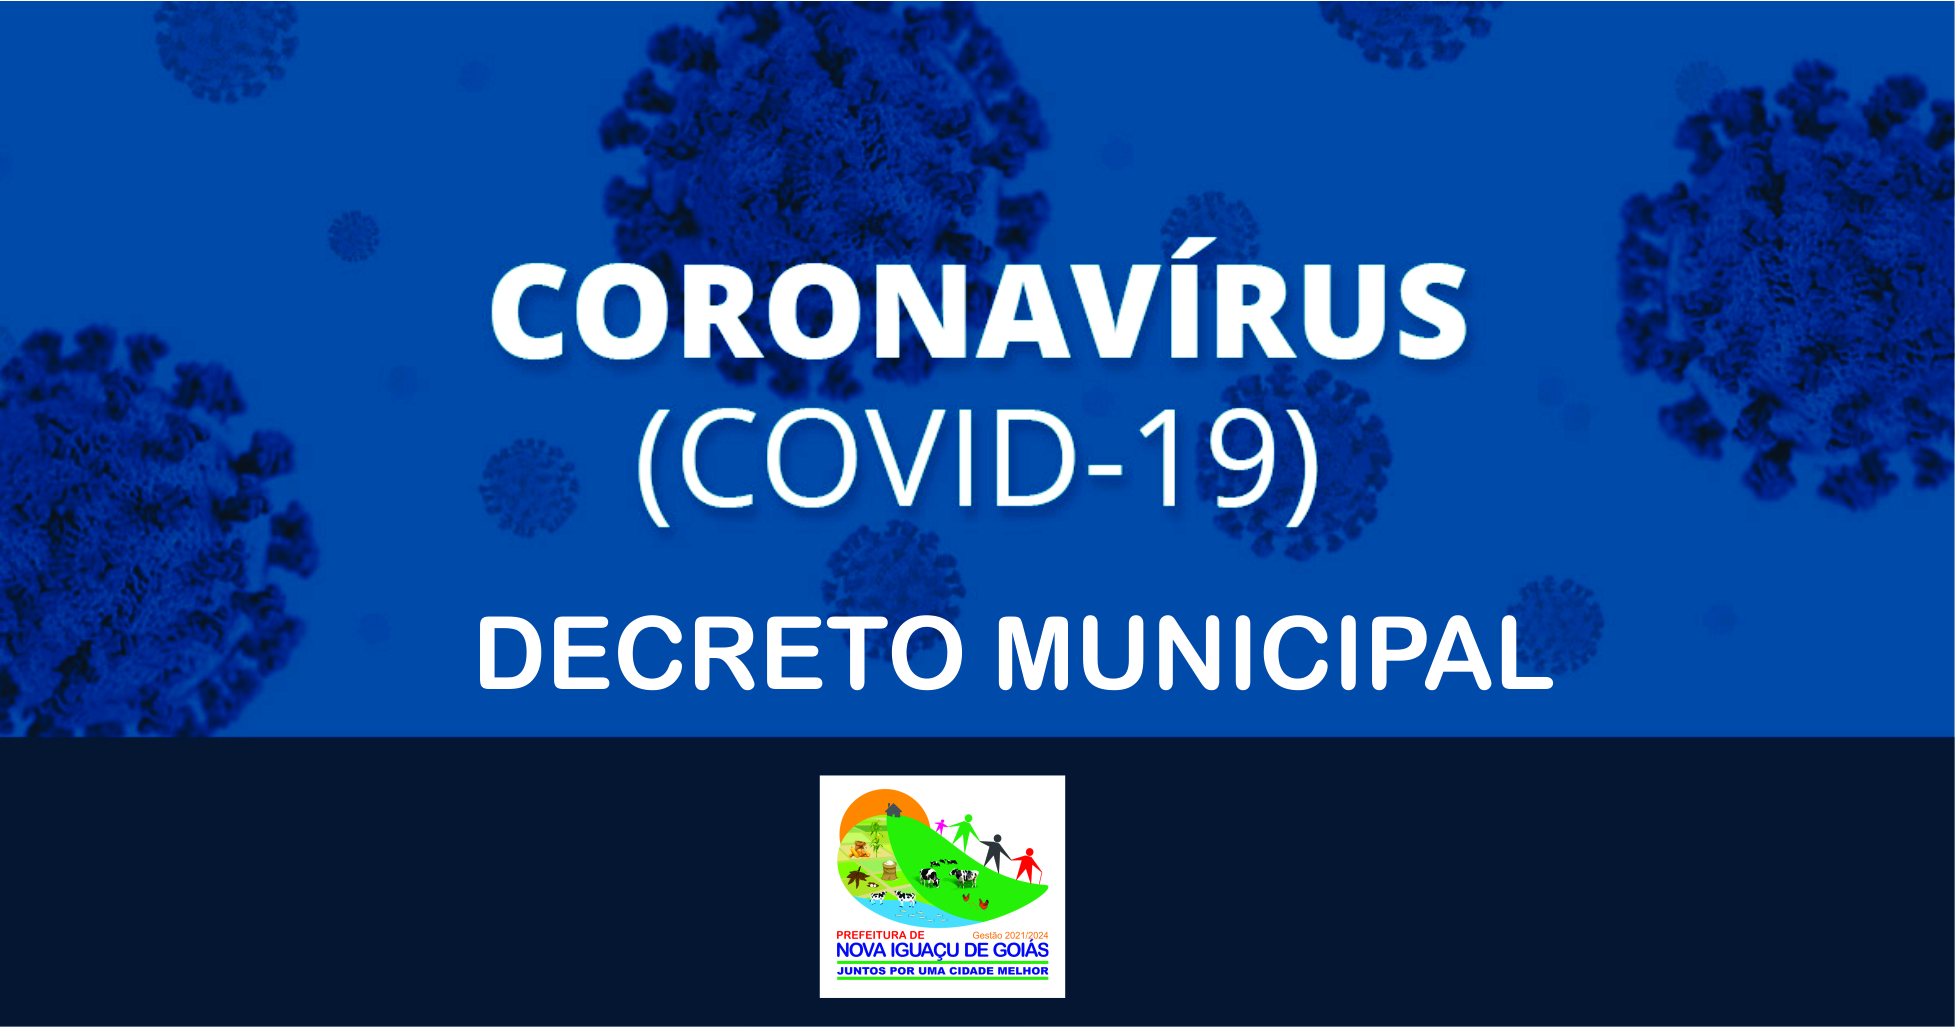 Read more about the article DECRETO MUNICIPAL COVID-19